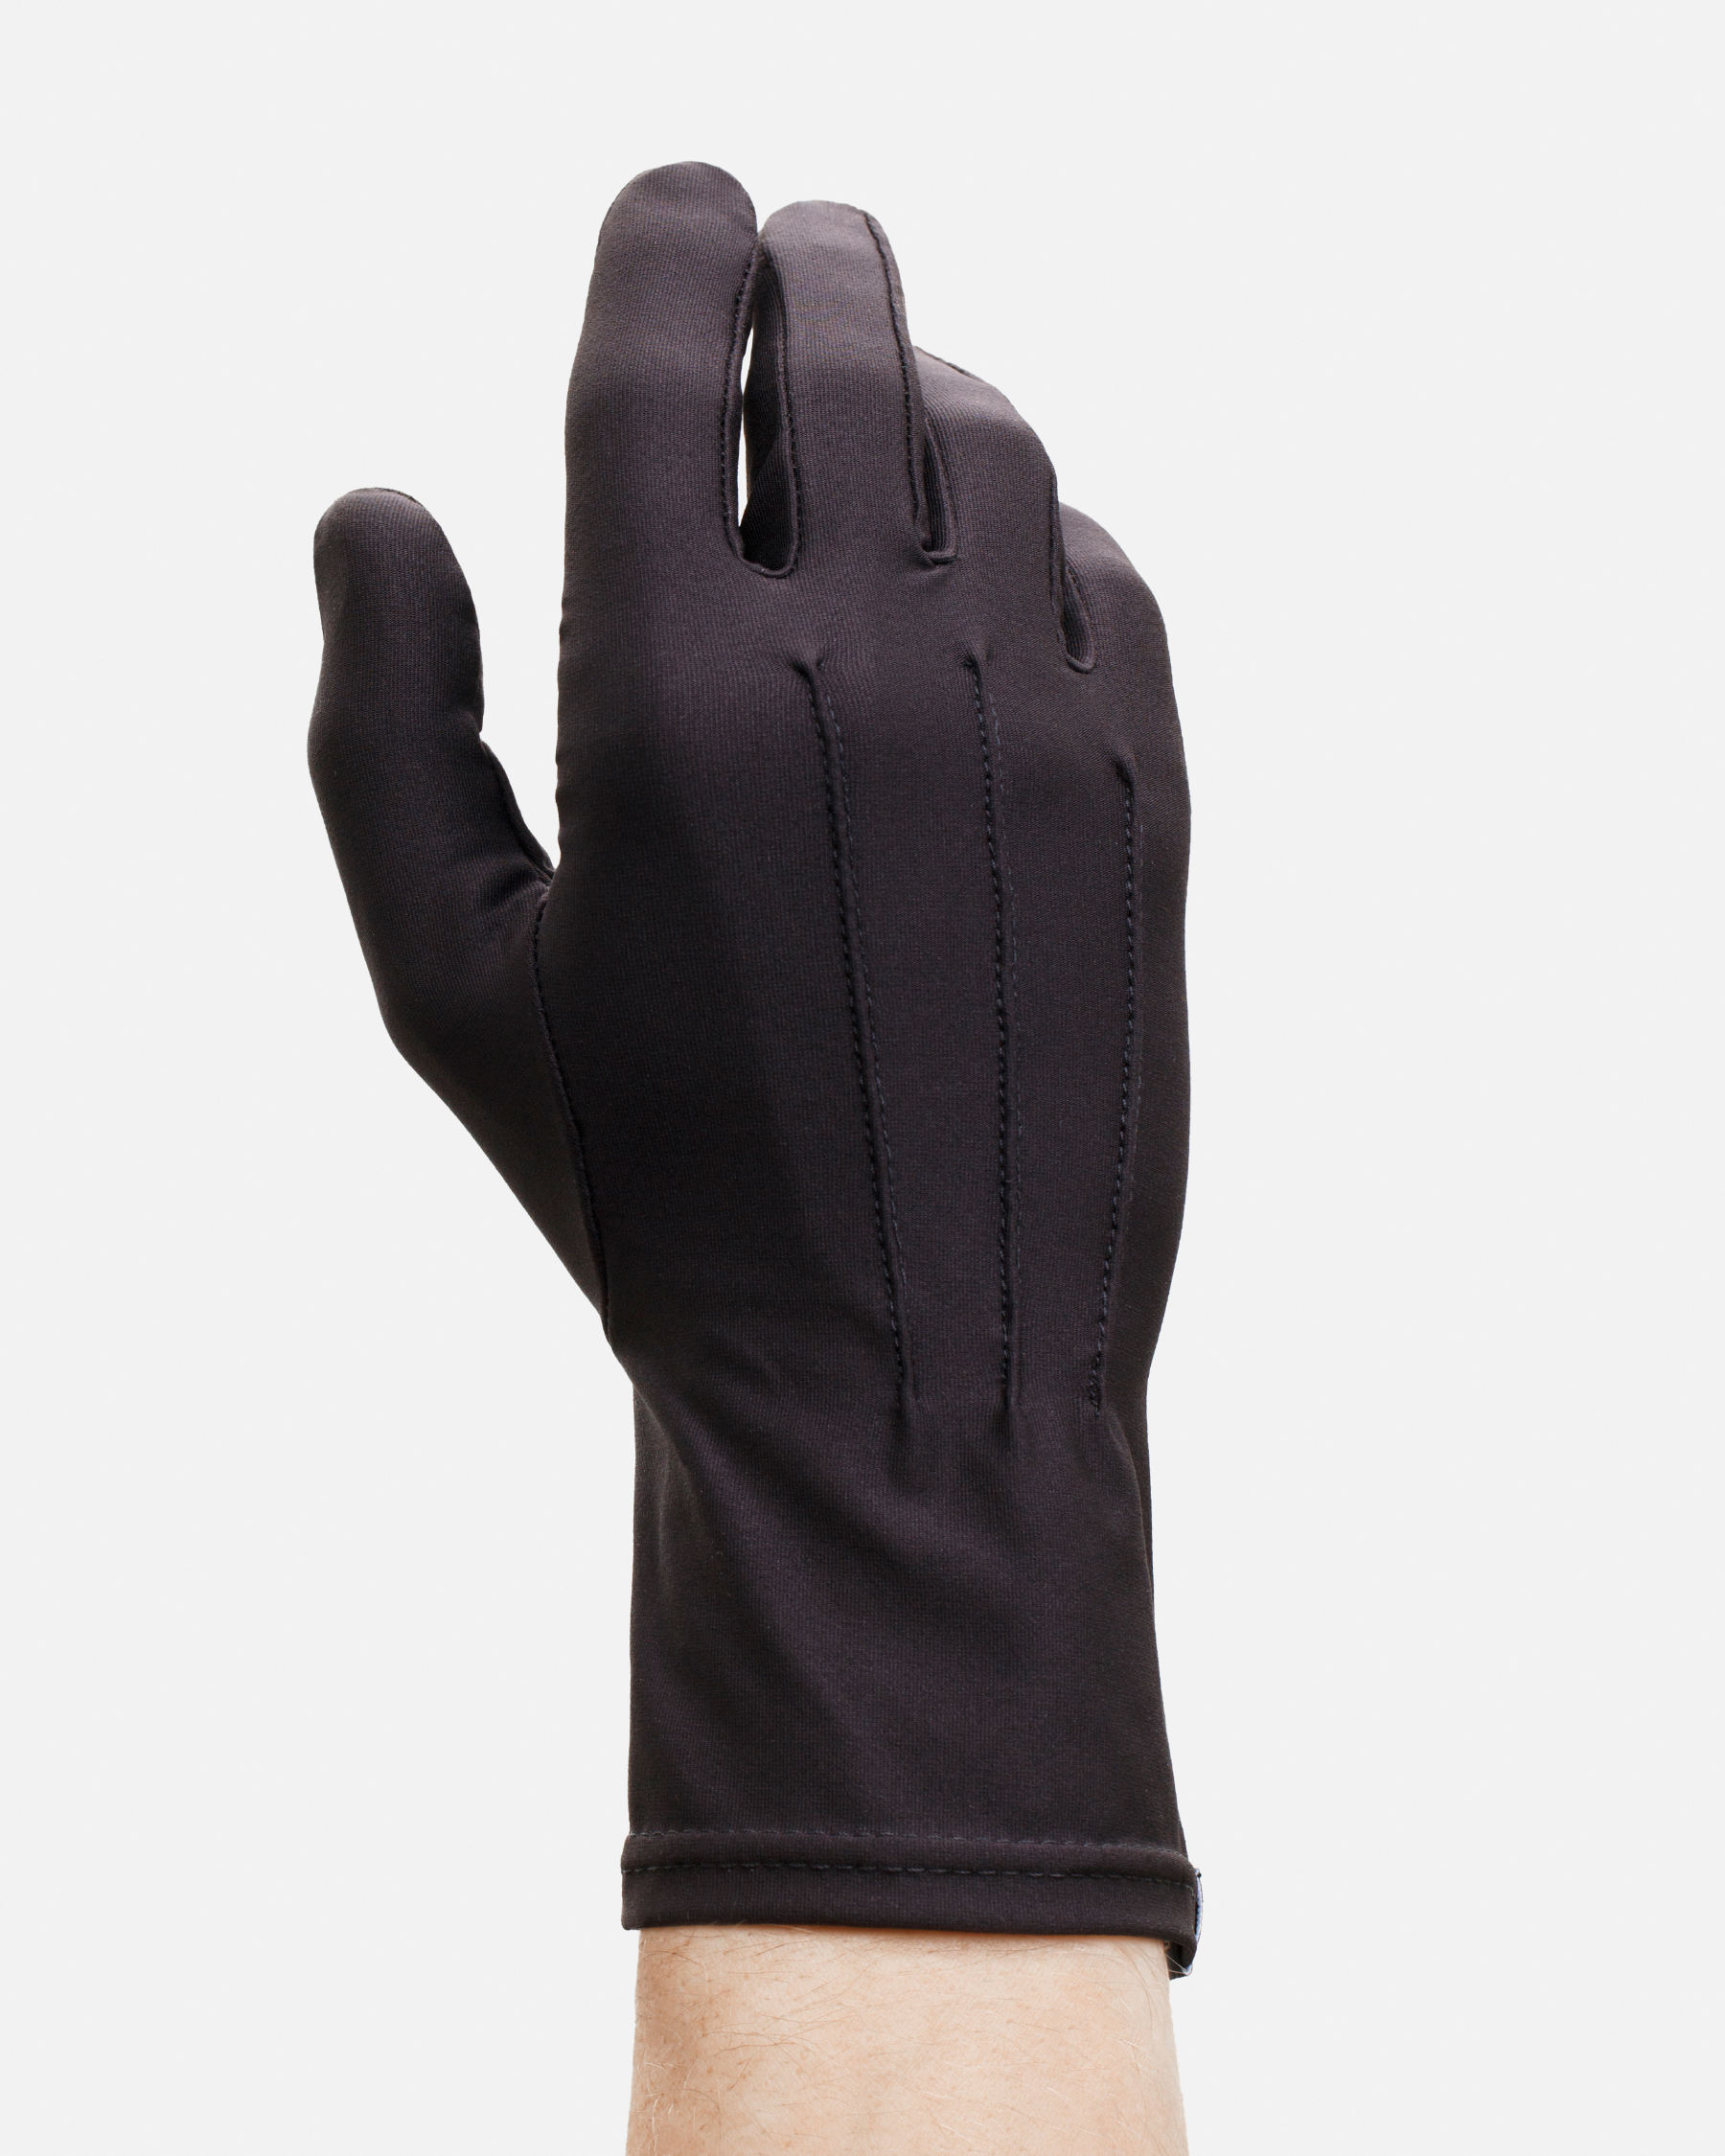 FAKBYFAK  The Vega. Fine Protective Antibacterial (ATB-UV+) Unisex Gloves. Black Code: FBF-41101-01